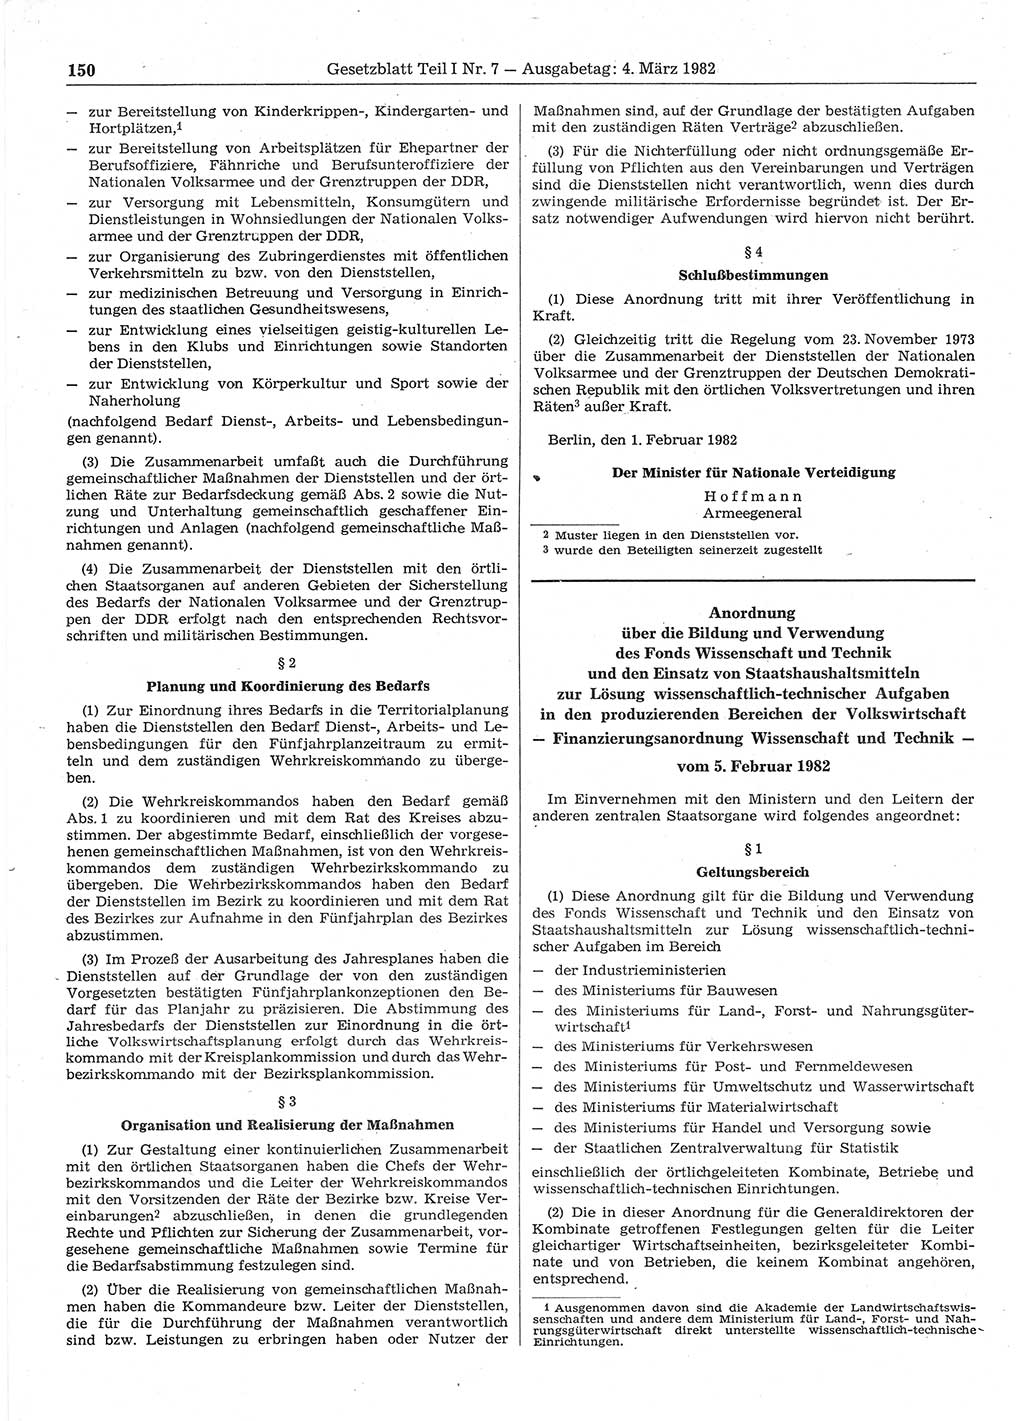 Gesetzblatt (GBl.) der Deutschen Demokratischen Republik (DDR) Teil Ⅰ 1982, Seite 150 (GBl. DDR Ⅰ 1982, S. 150)